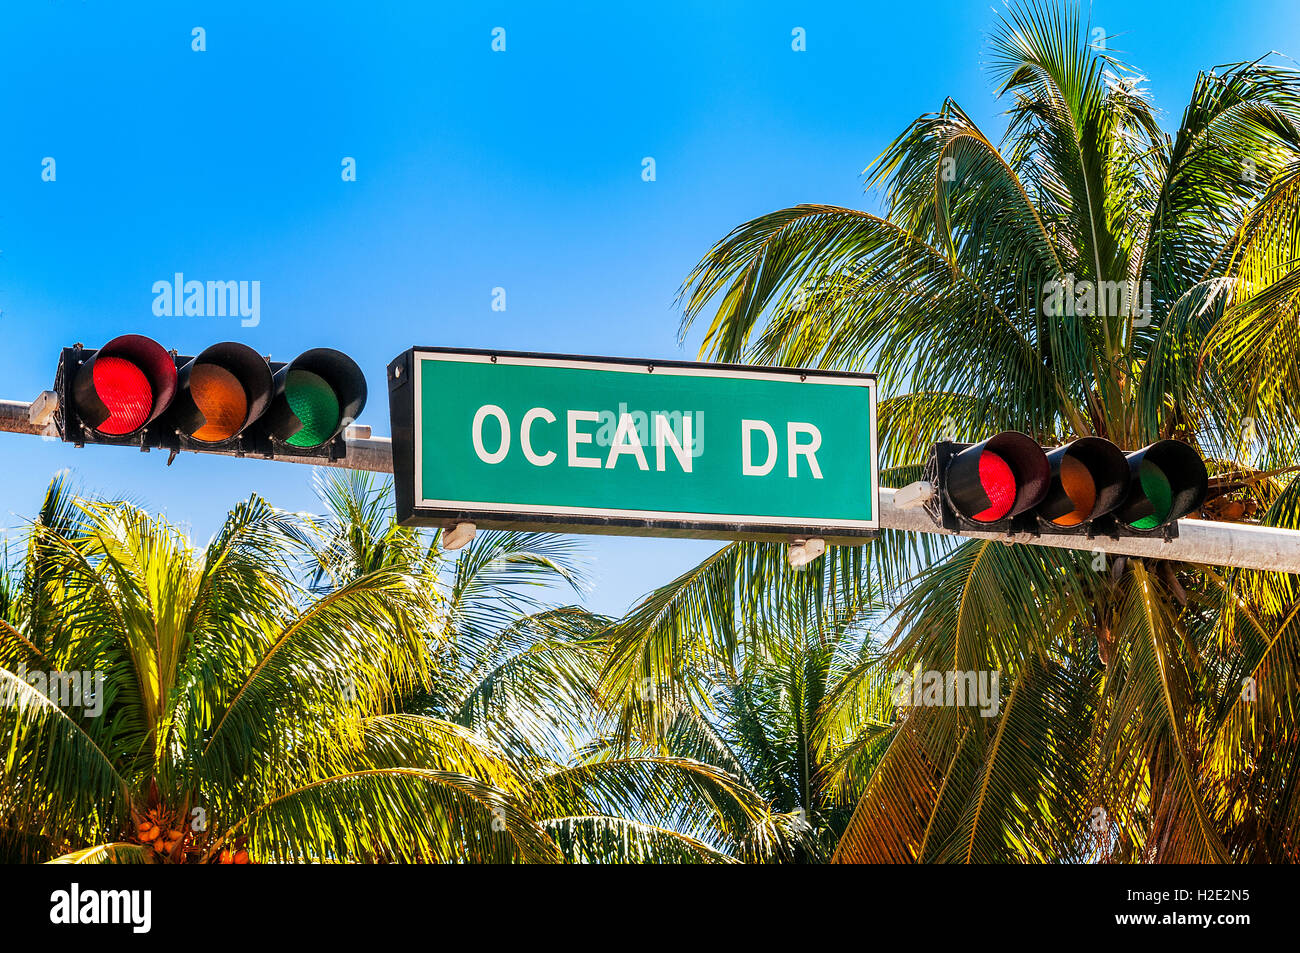 Miami beach, Floride, USA Stock Photo